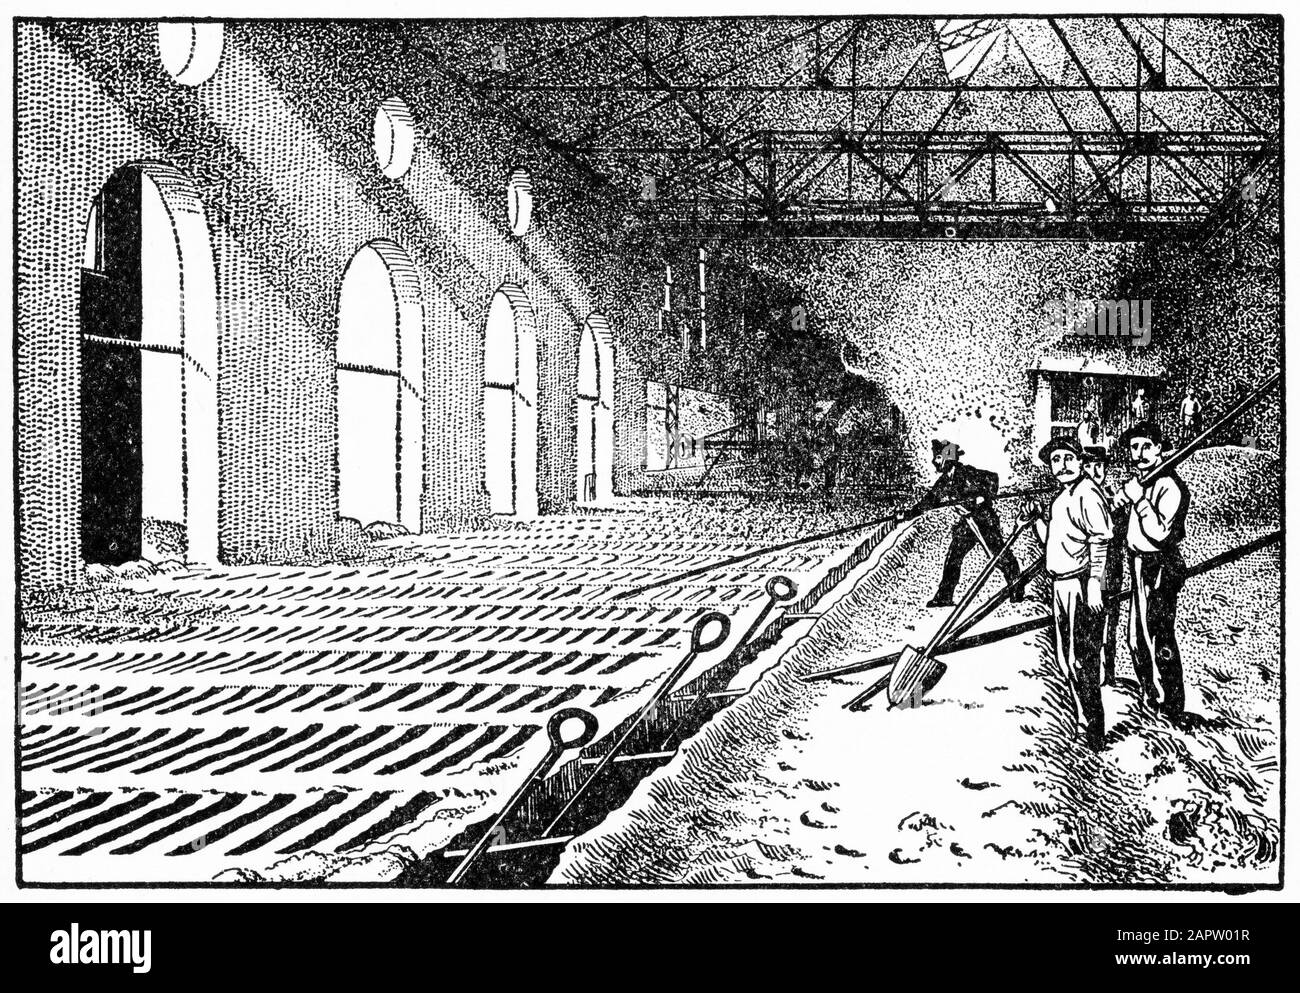 Gravur von Männern, die Roheisen in einer Gießerei gießen. Basierend auf einem Foto der Iroquois Schmelzerei, Chicago. Stockfoto